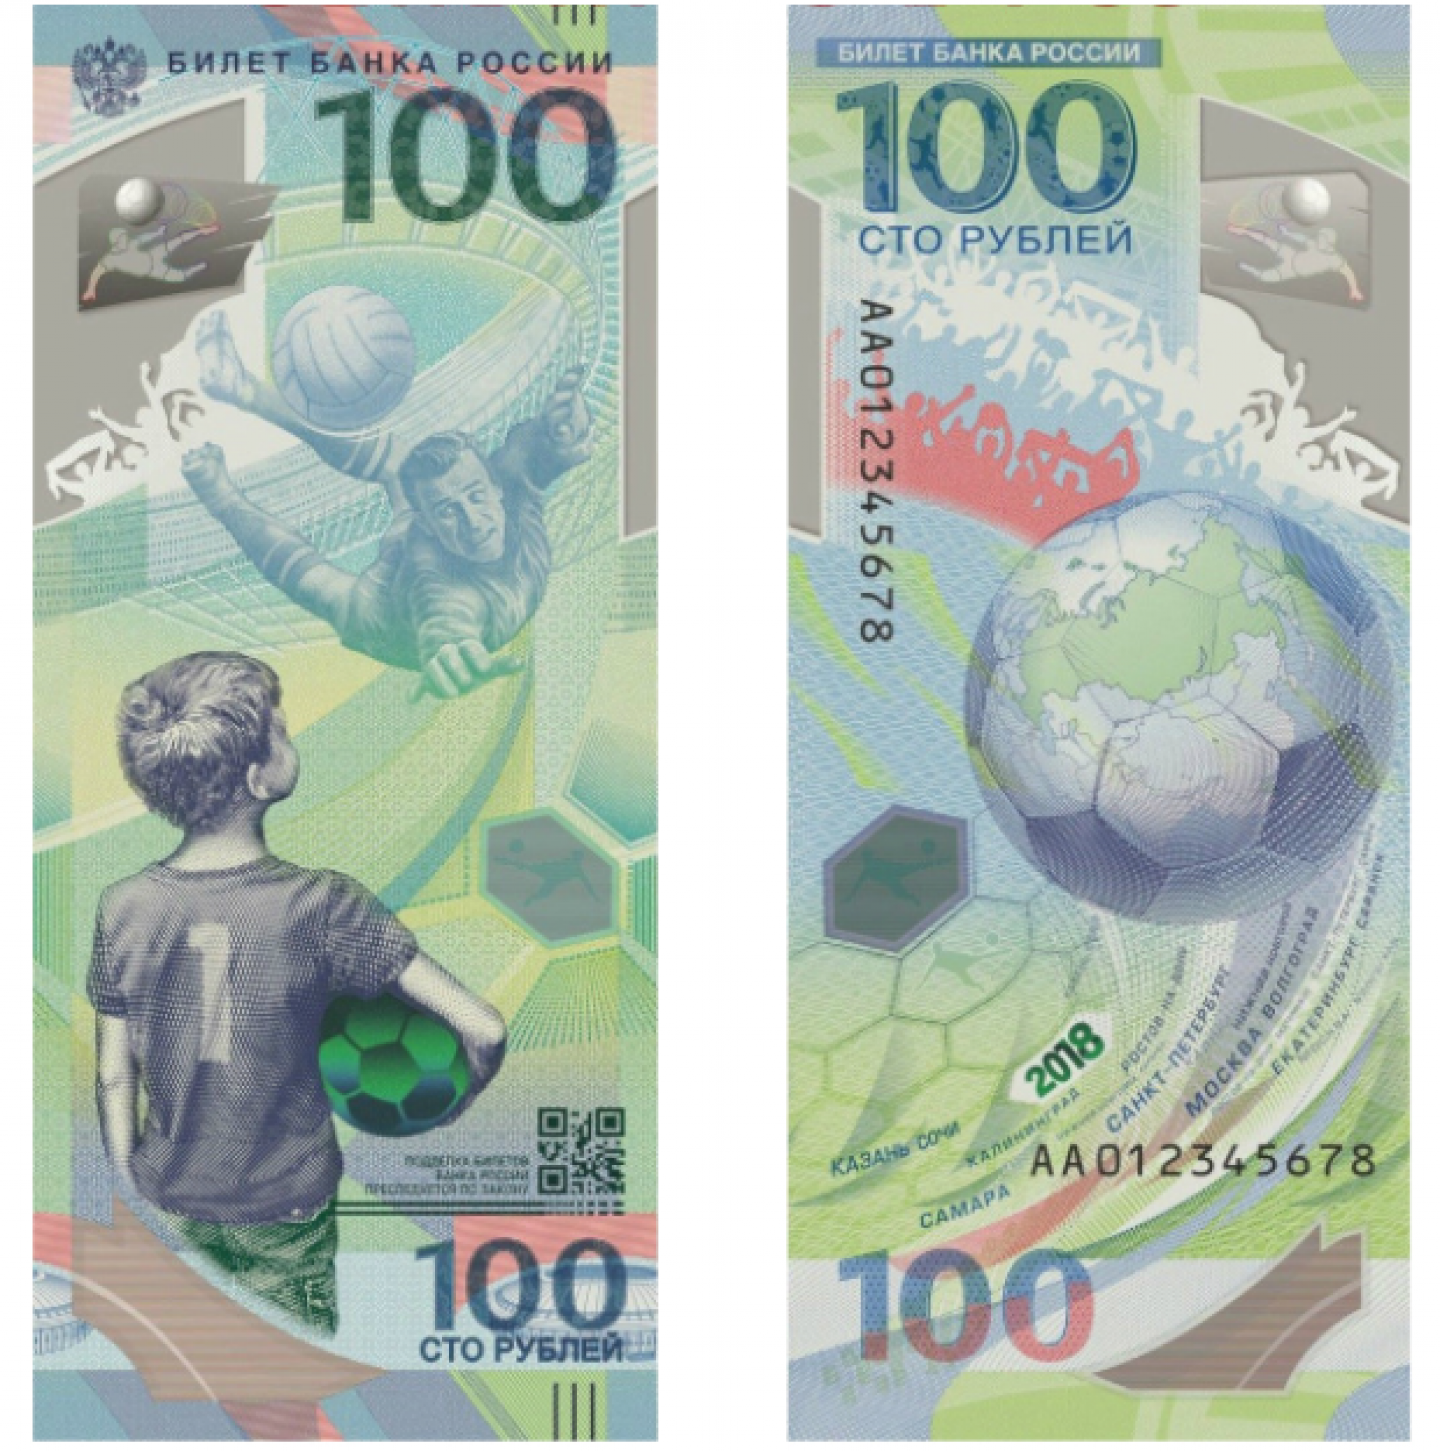 100 российских рублей